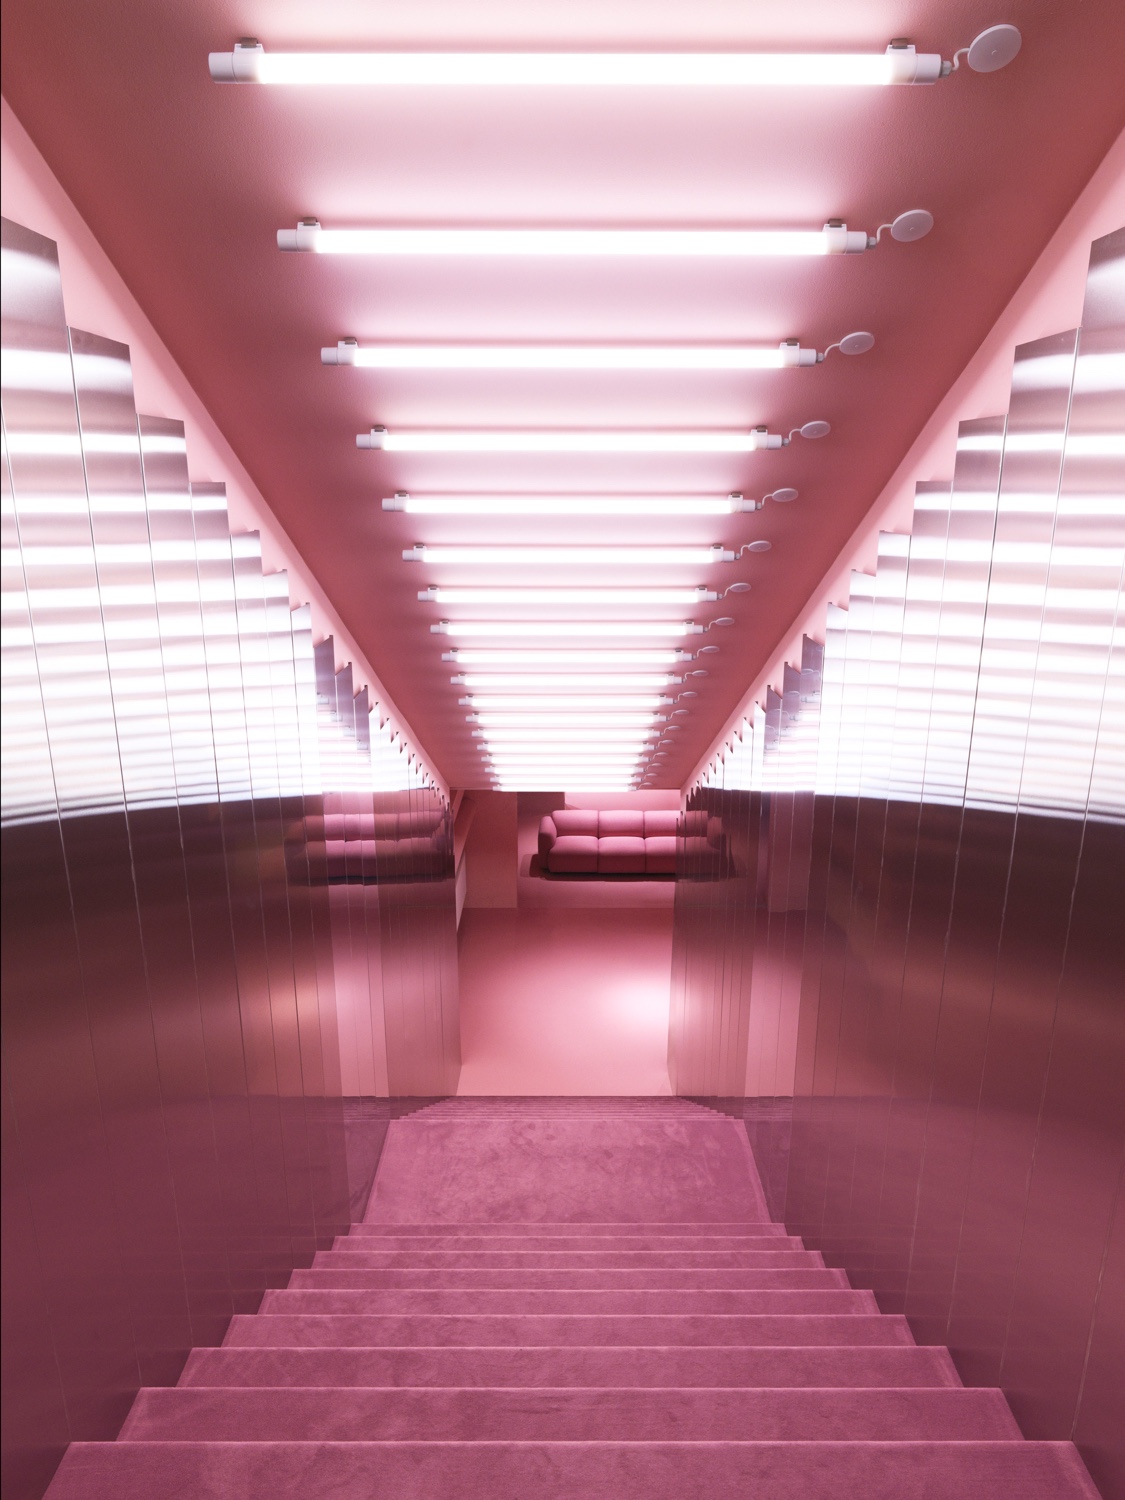 Normann Copenhagen’s Gallery stairwell